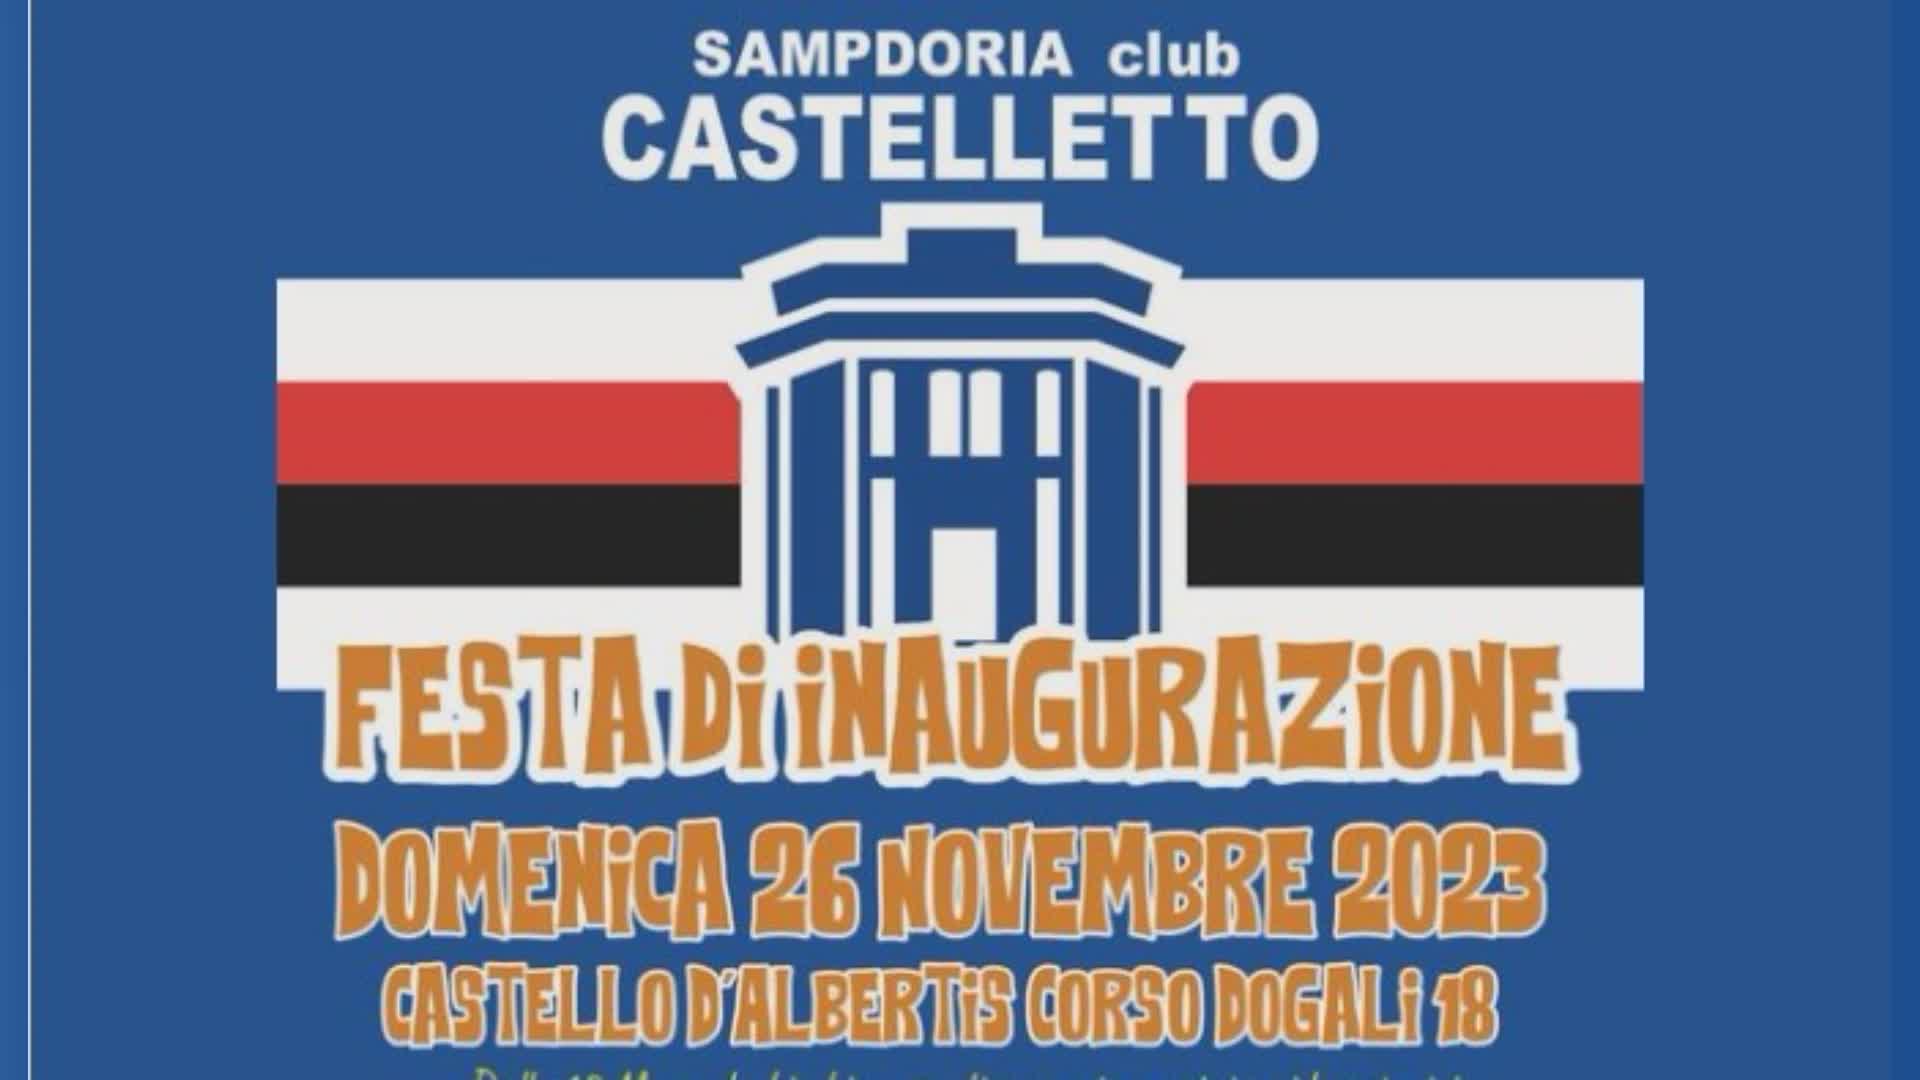 Sampdoria: nuovo club Castelletto, domenica 26 al Castello d'Albertis la festa inaugurale